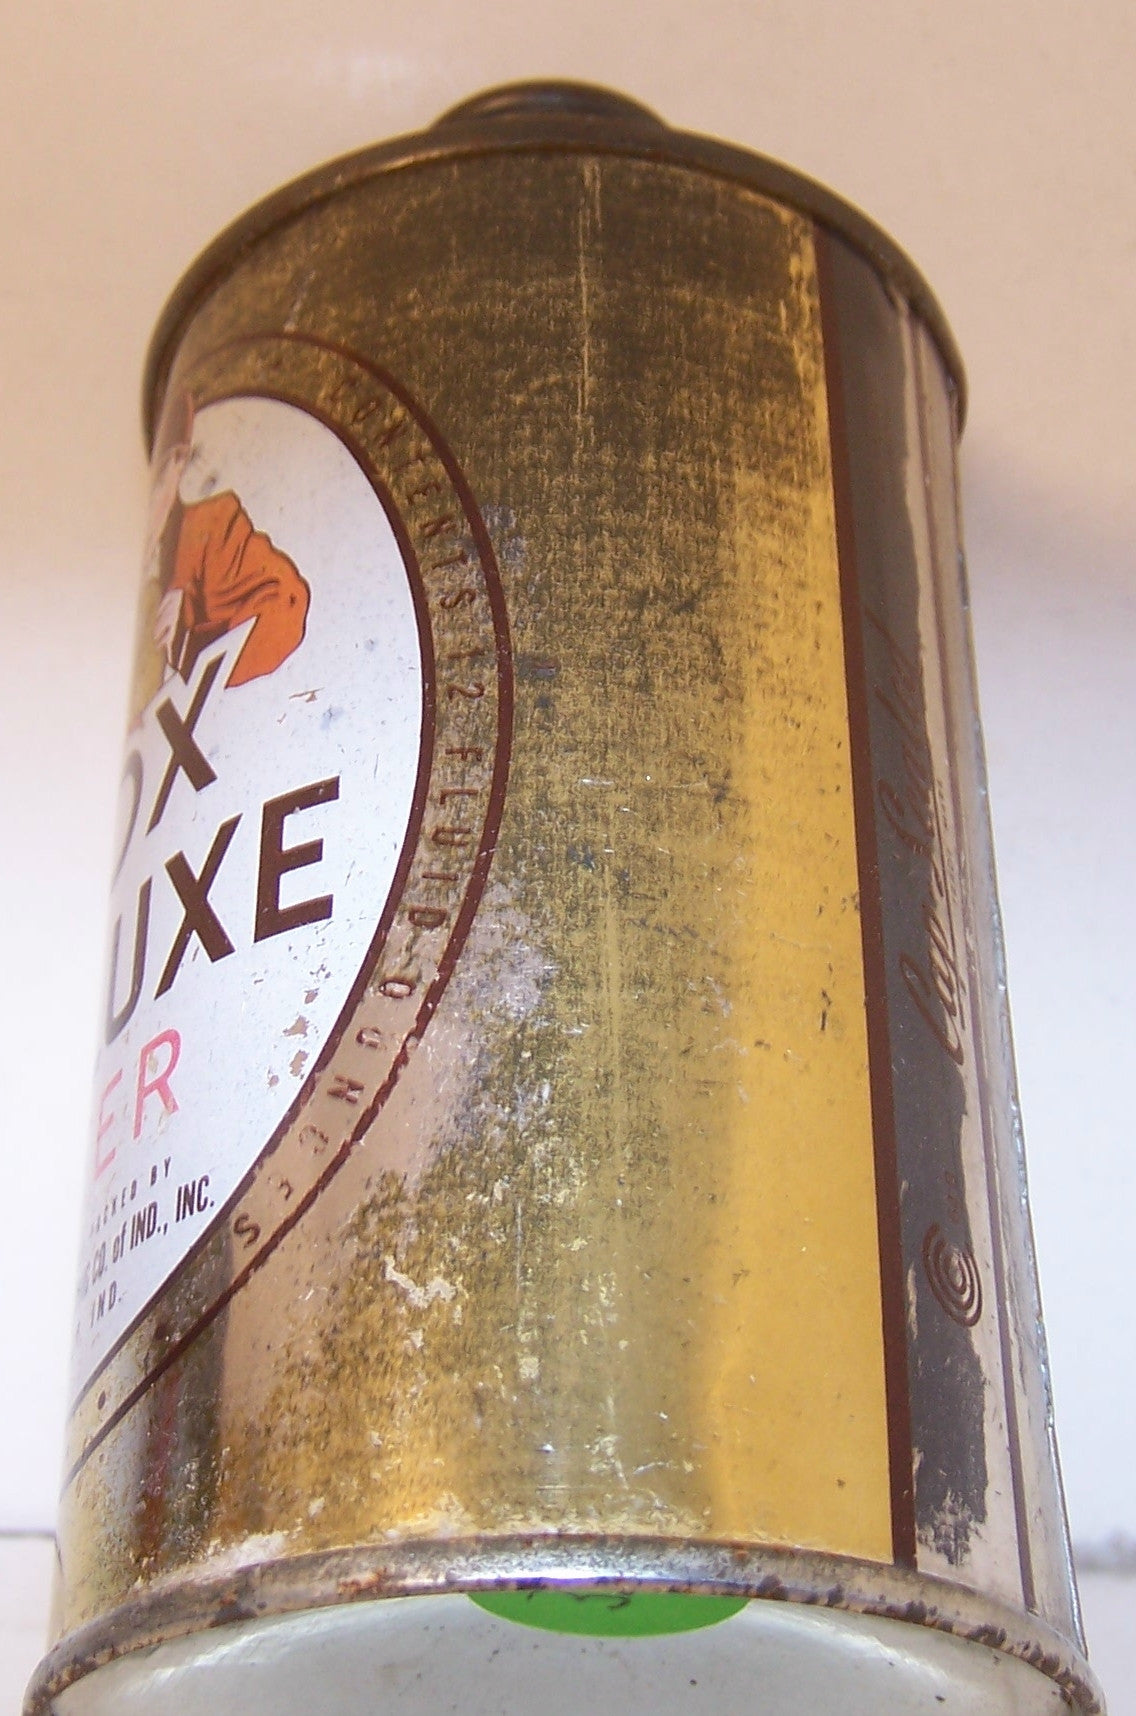 Fox Deluxe Beer, USBC 163-24, Grade 1-/2+ Sold on 04/05/18